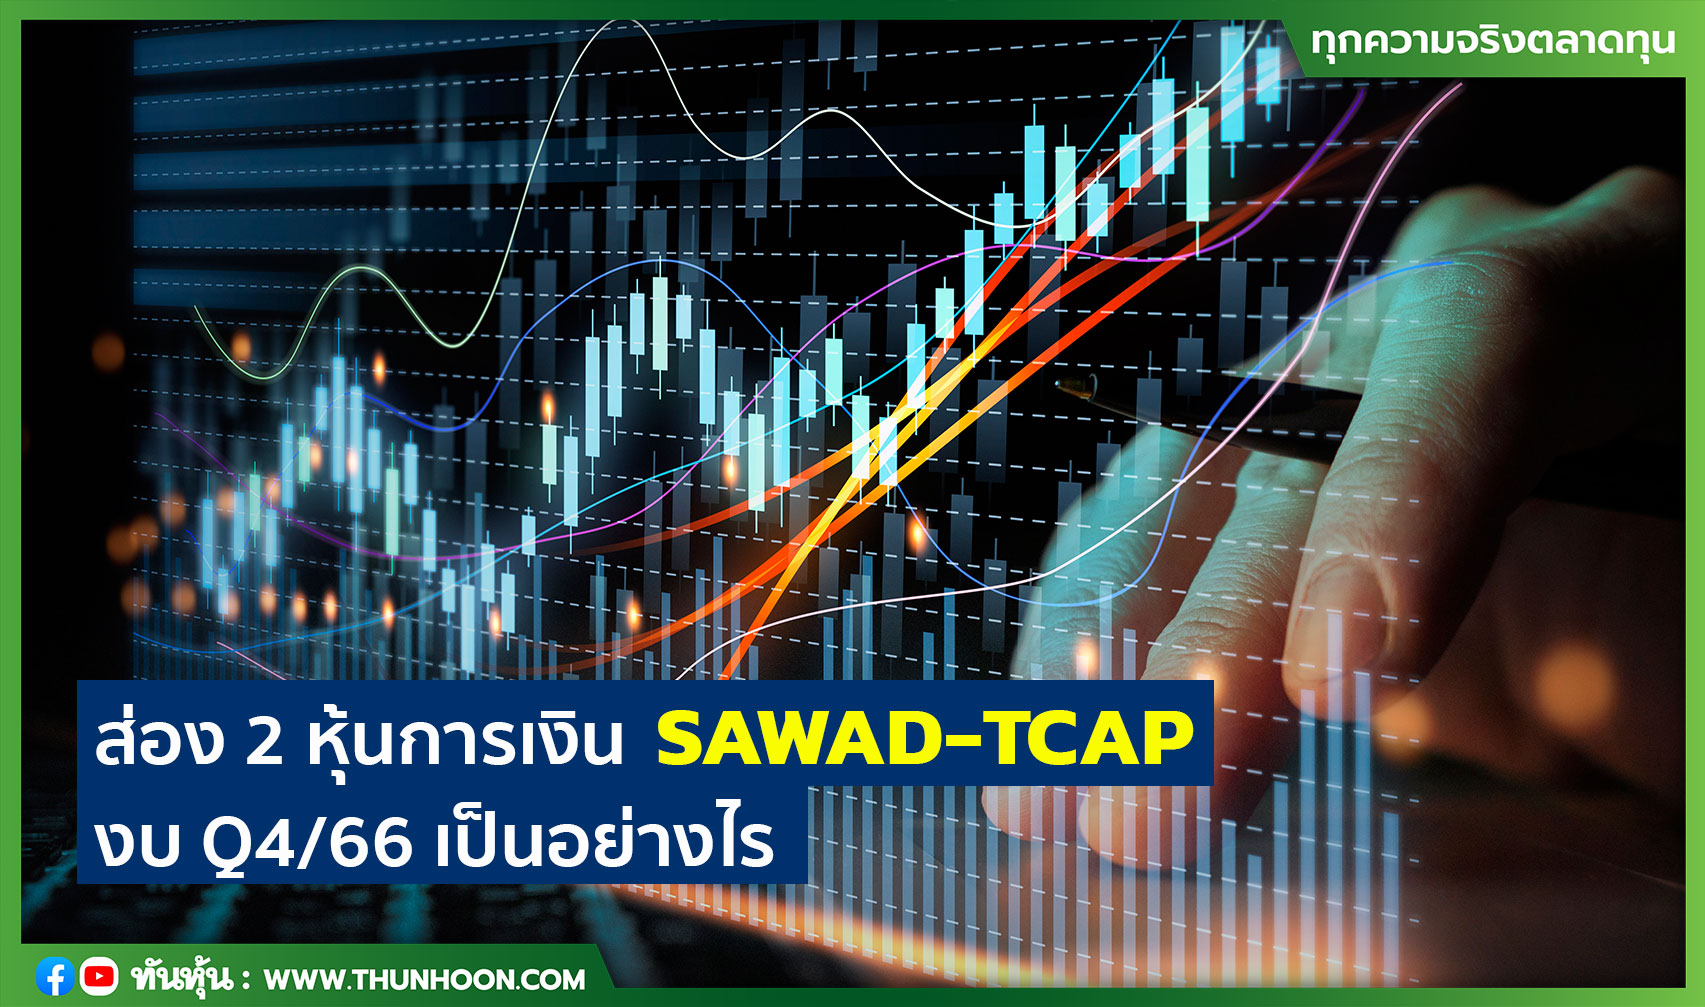 ส่อง 2 หุ้นการเงิน SAWAD-TCAP งบ Q4/66 เป็นอย่างไร